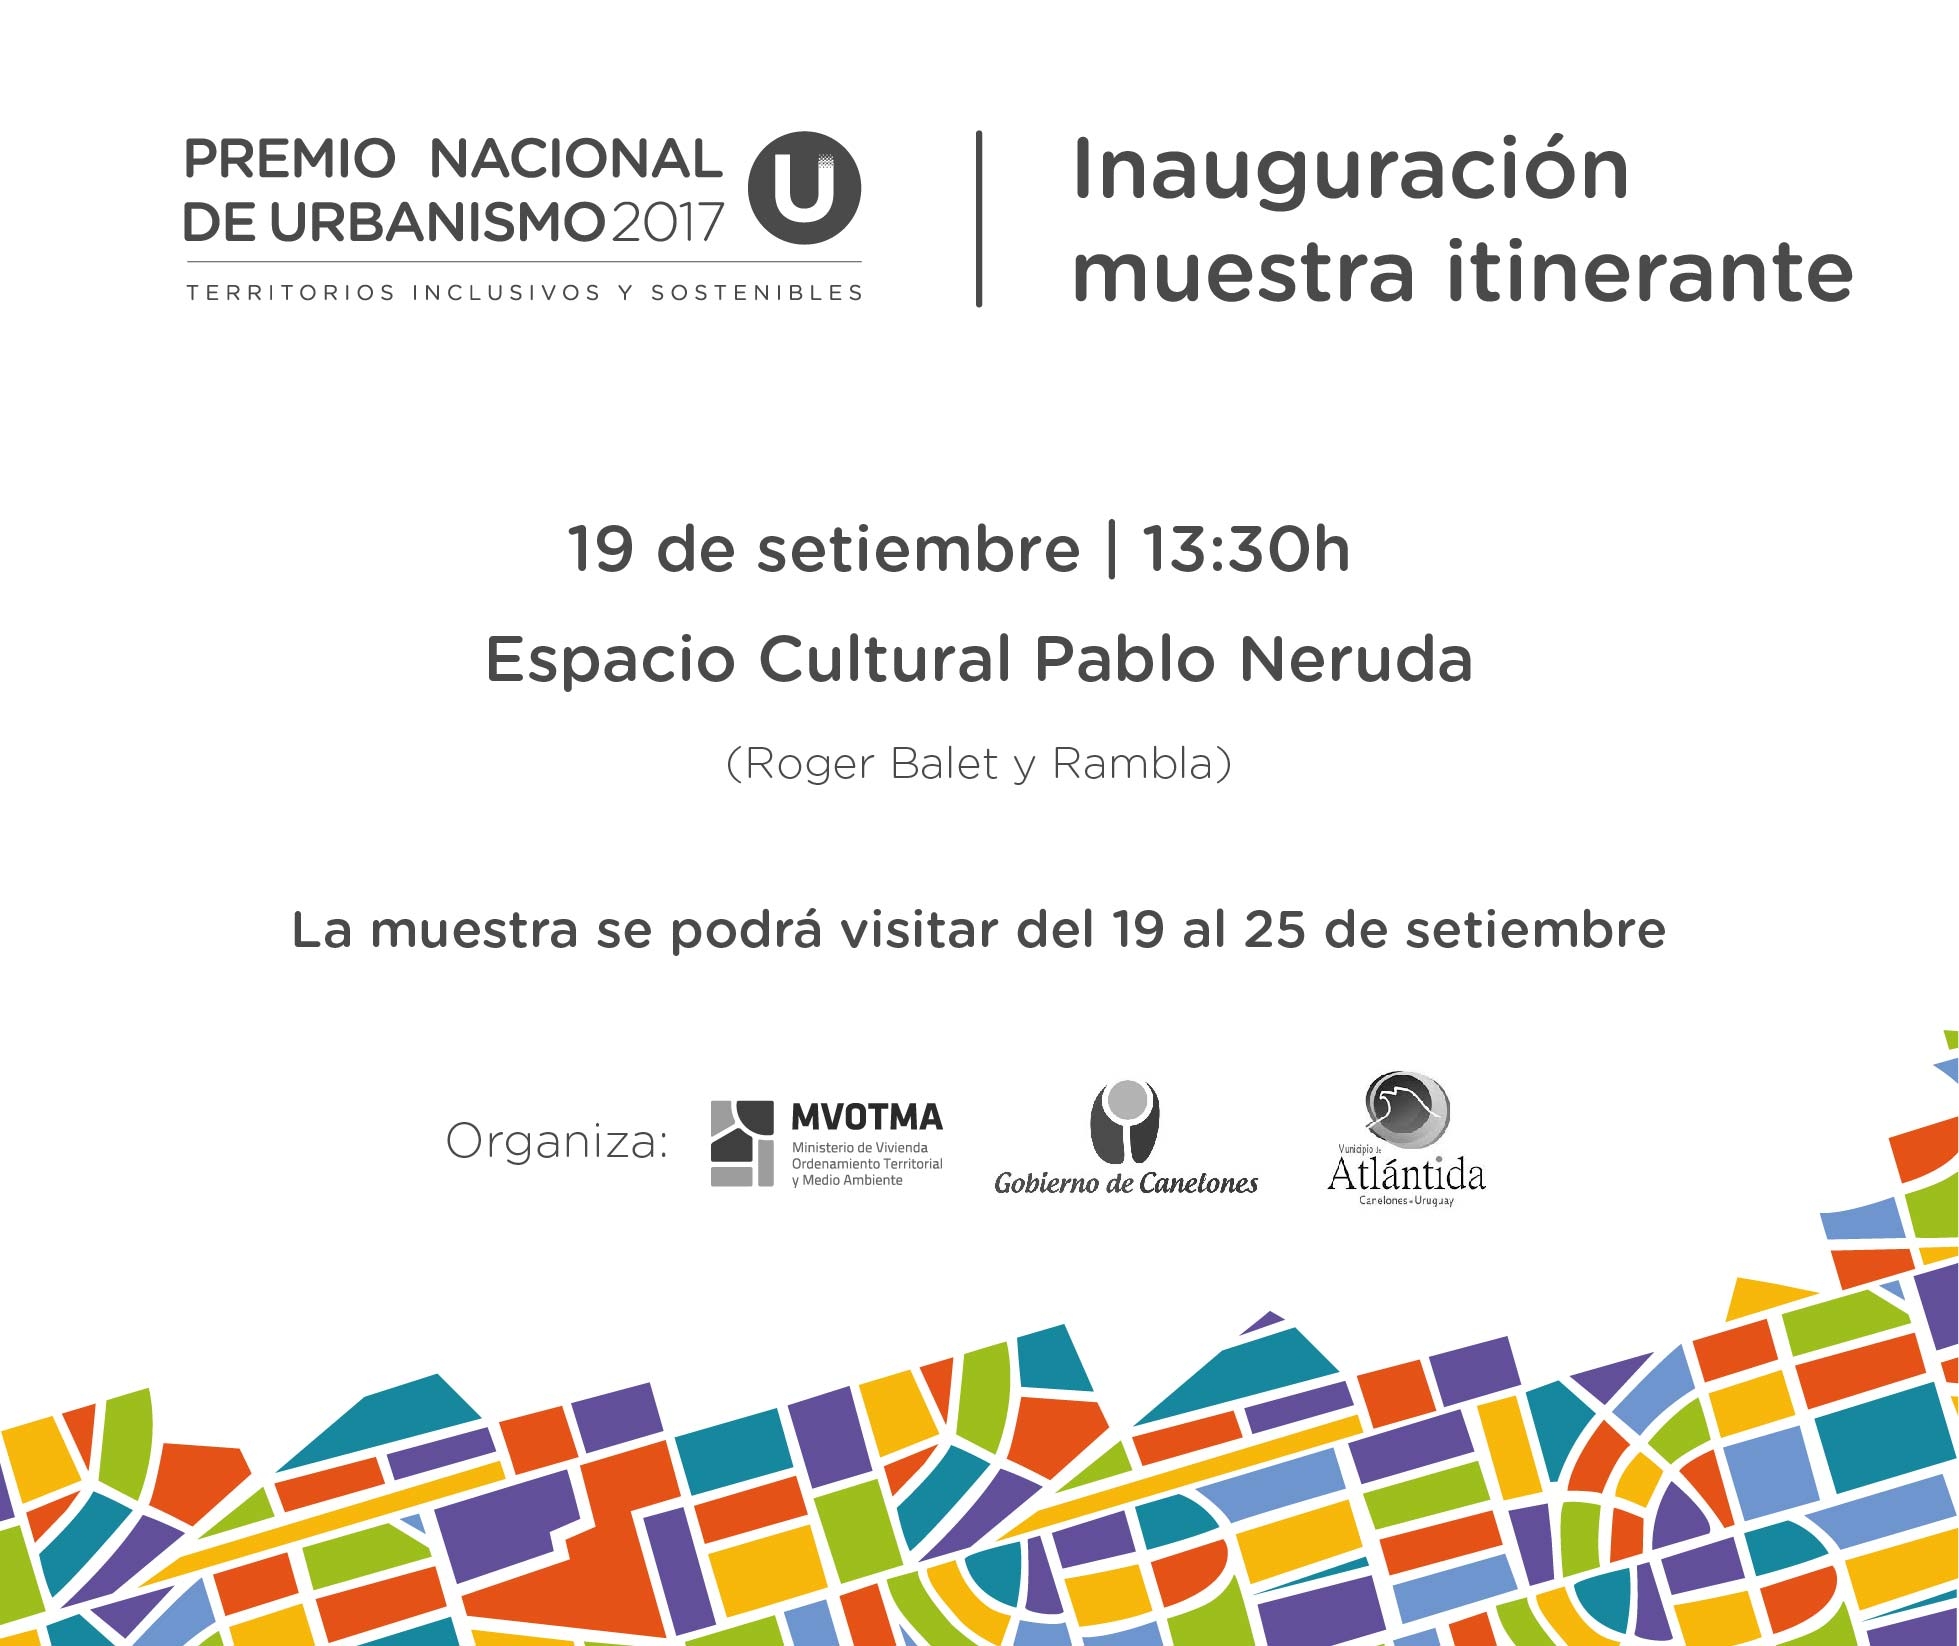 Inauguración muestra itinerante Premio Nacional de Urbanismo 2017. 